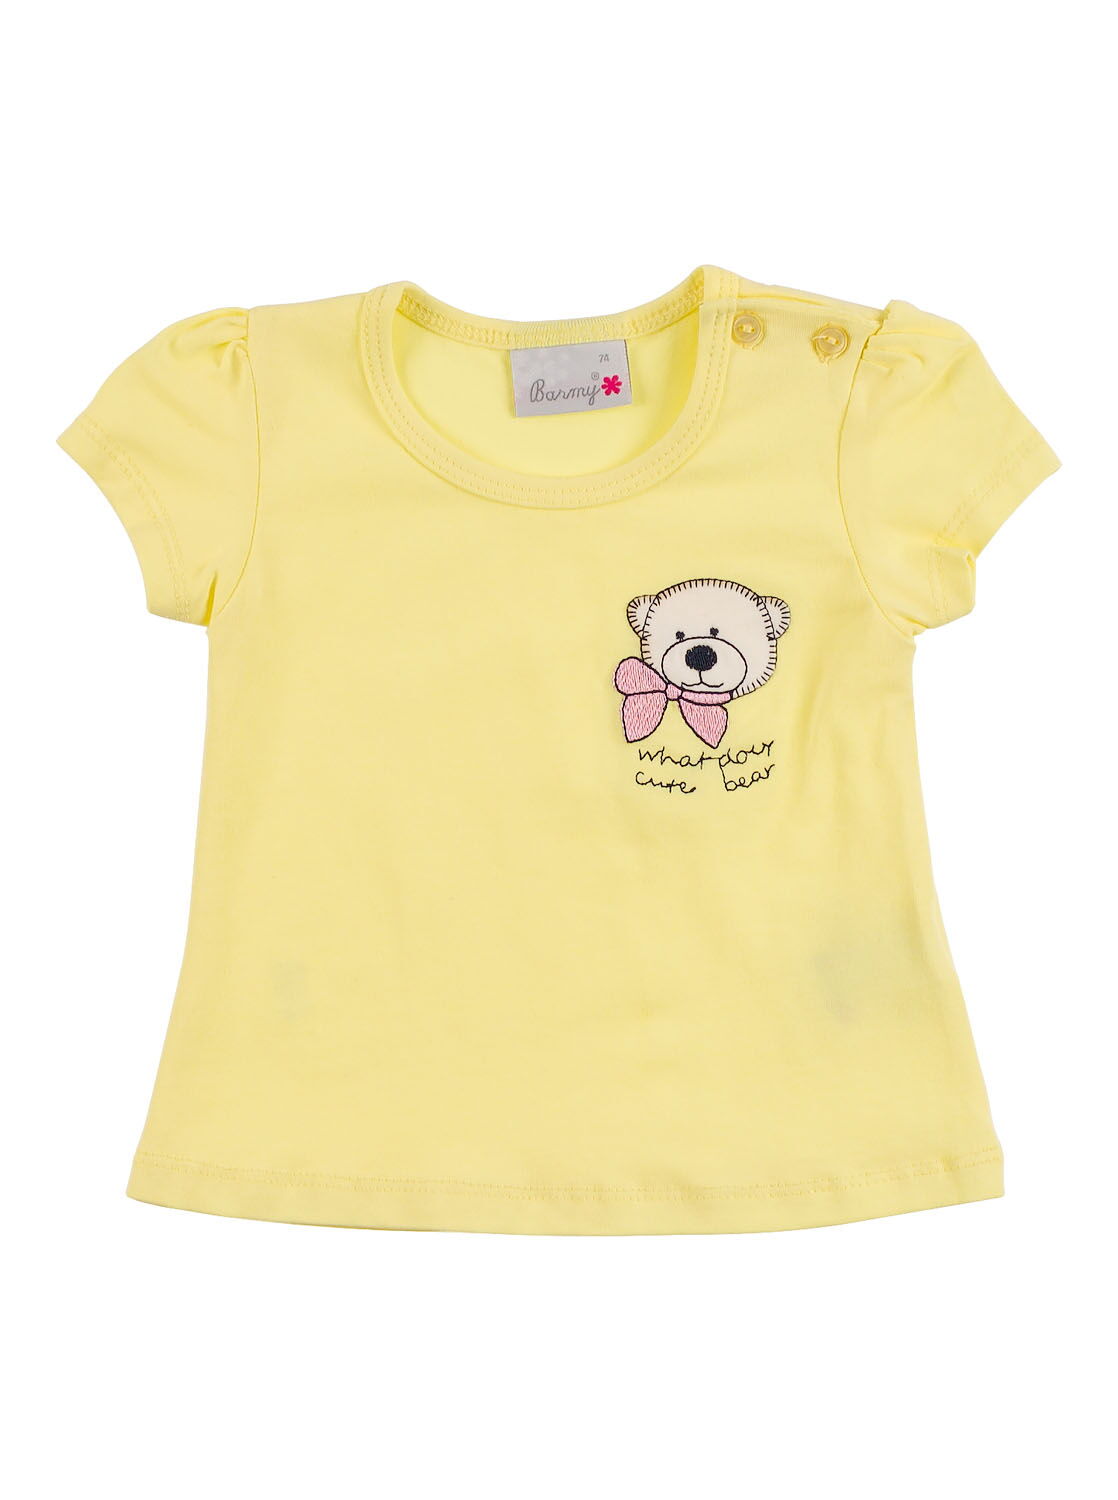 Комплект футболка и бриджи Barmy Мишка желтый 0041 - размеры